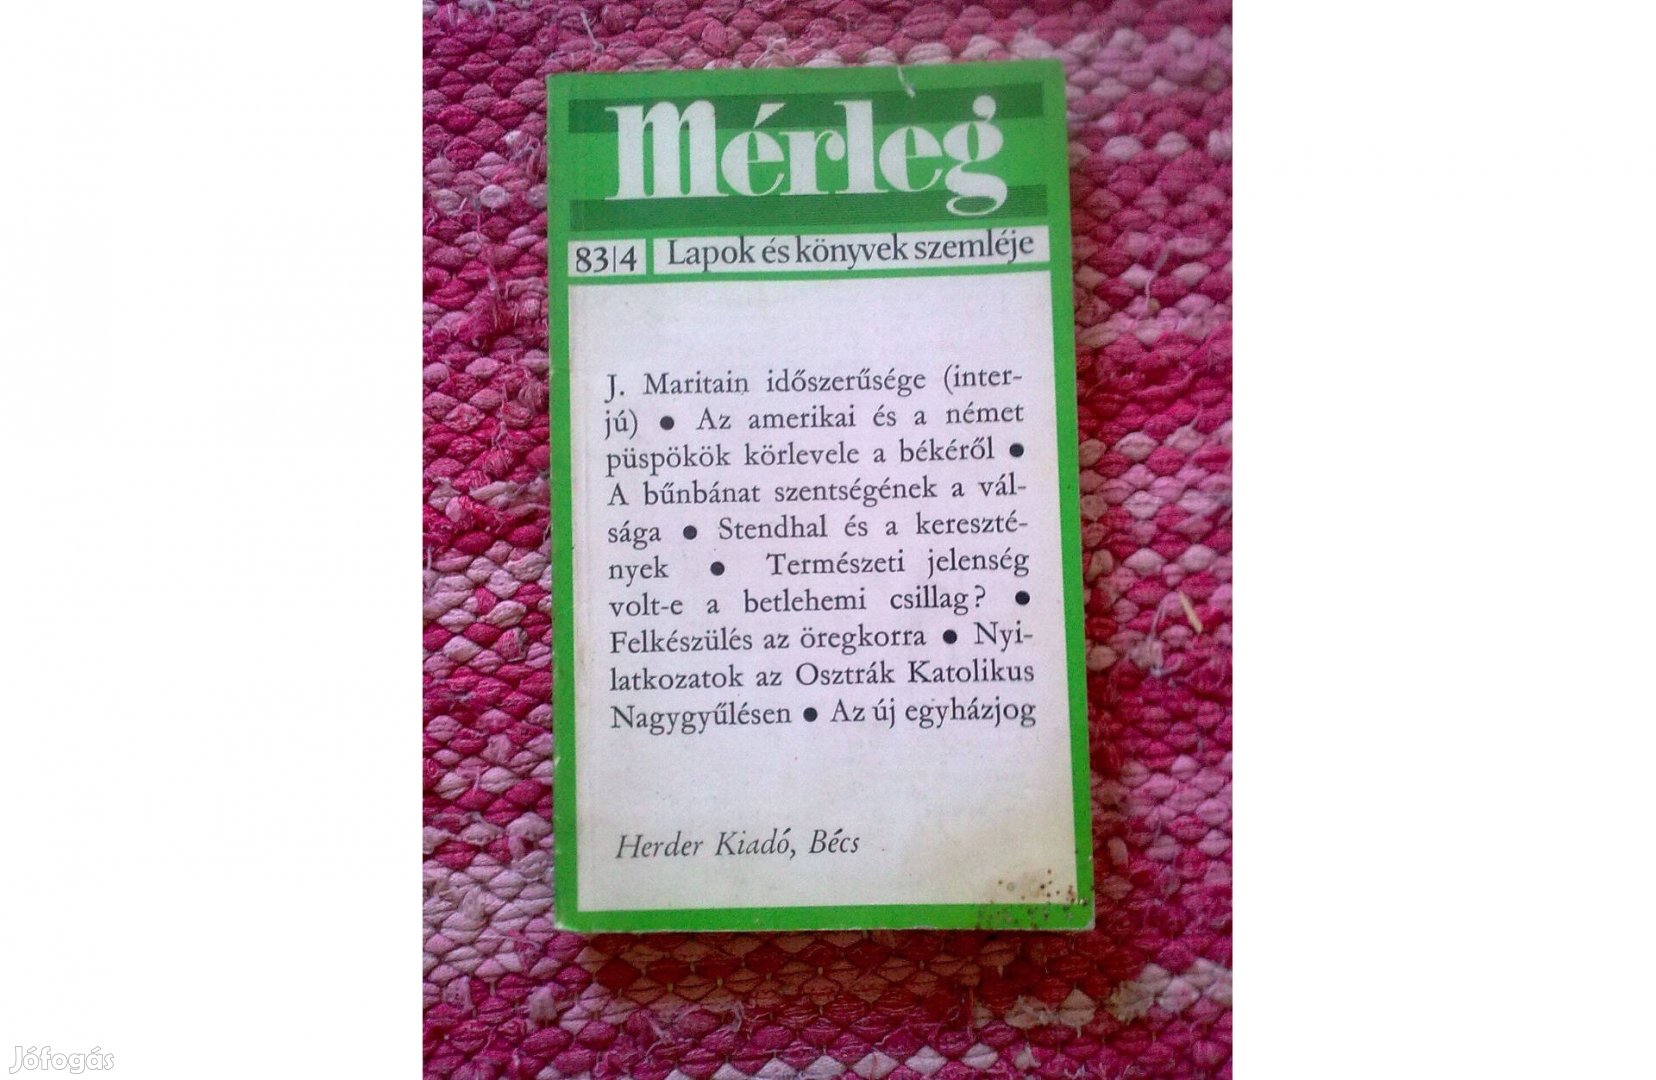 Mérleg folyóirat 83/4 Herder Kiadó - Bécs